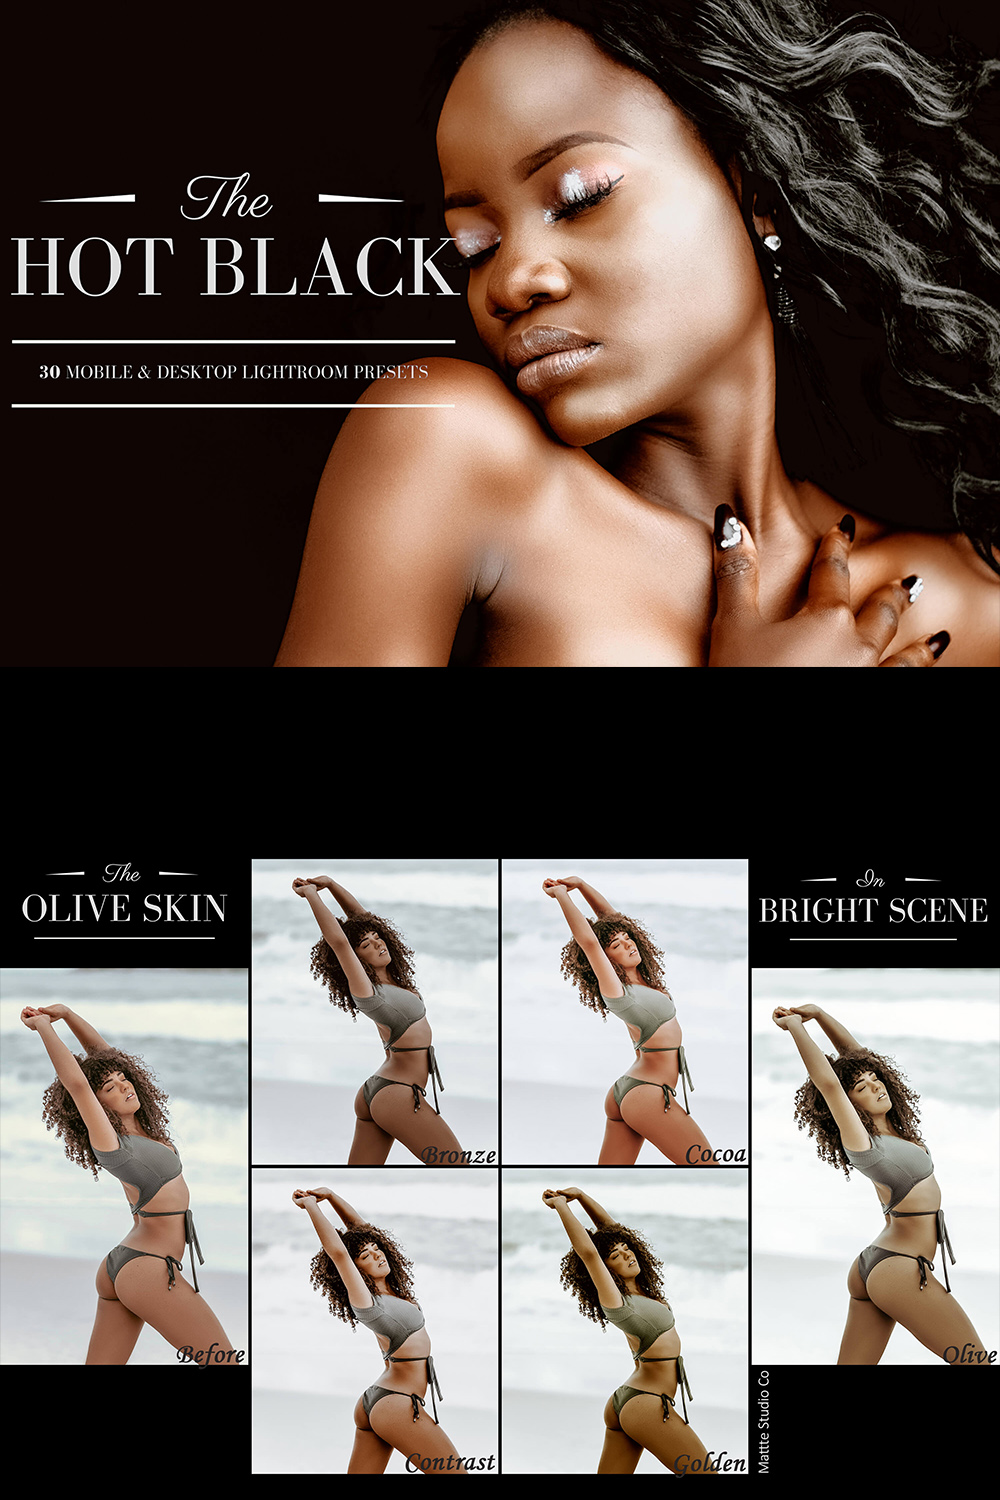 30 Hot Black Mobile & Desktop Lightroom Presets, dark skin LR preset, Portrait editing Filter, DNG Lifestyle Photographer Instagram Theme pinterest preview image.